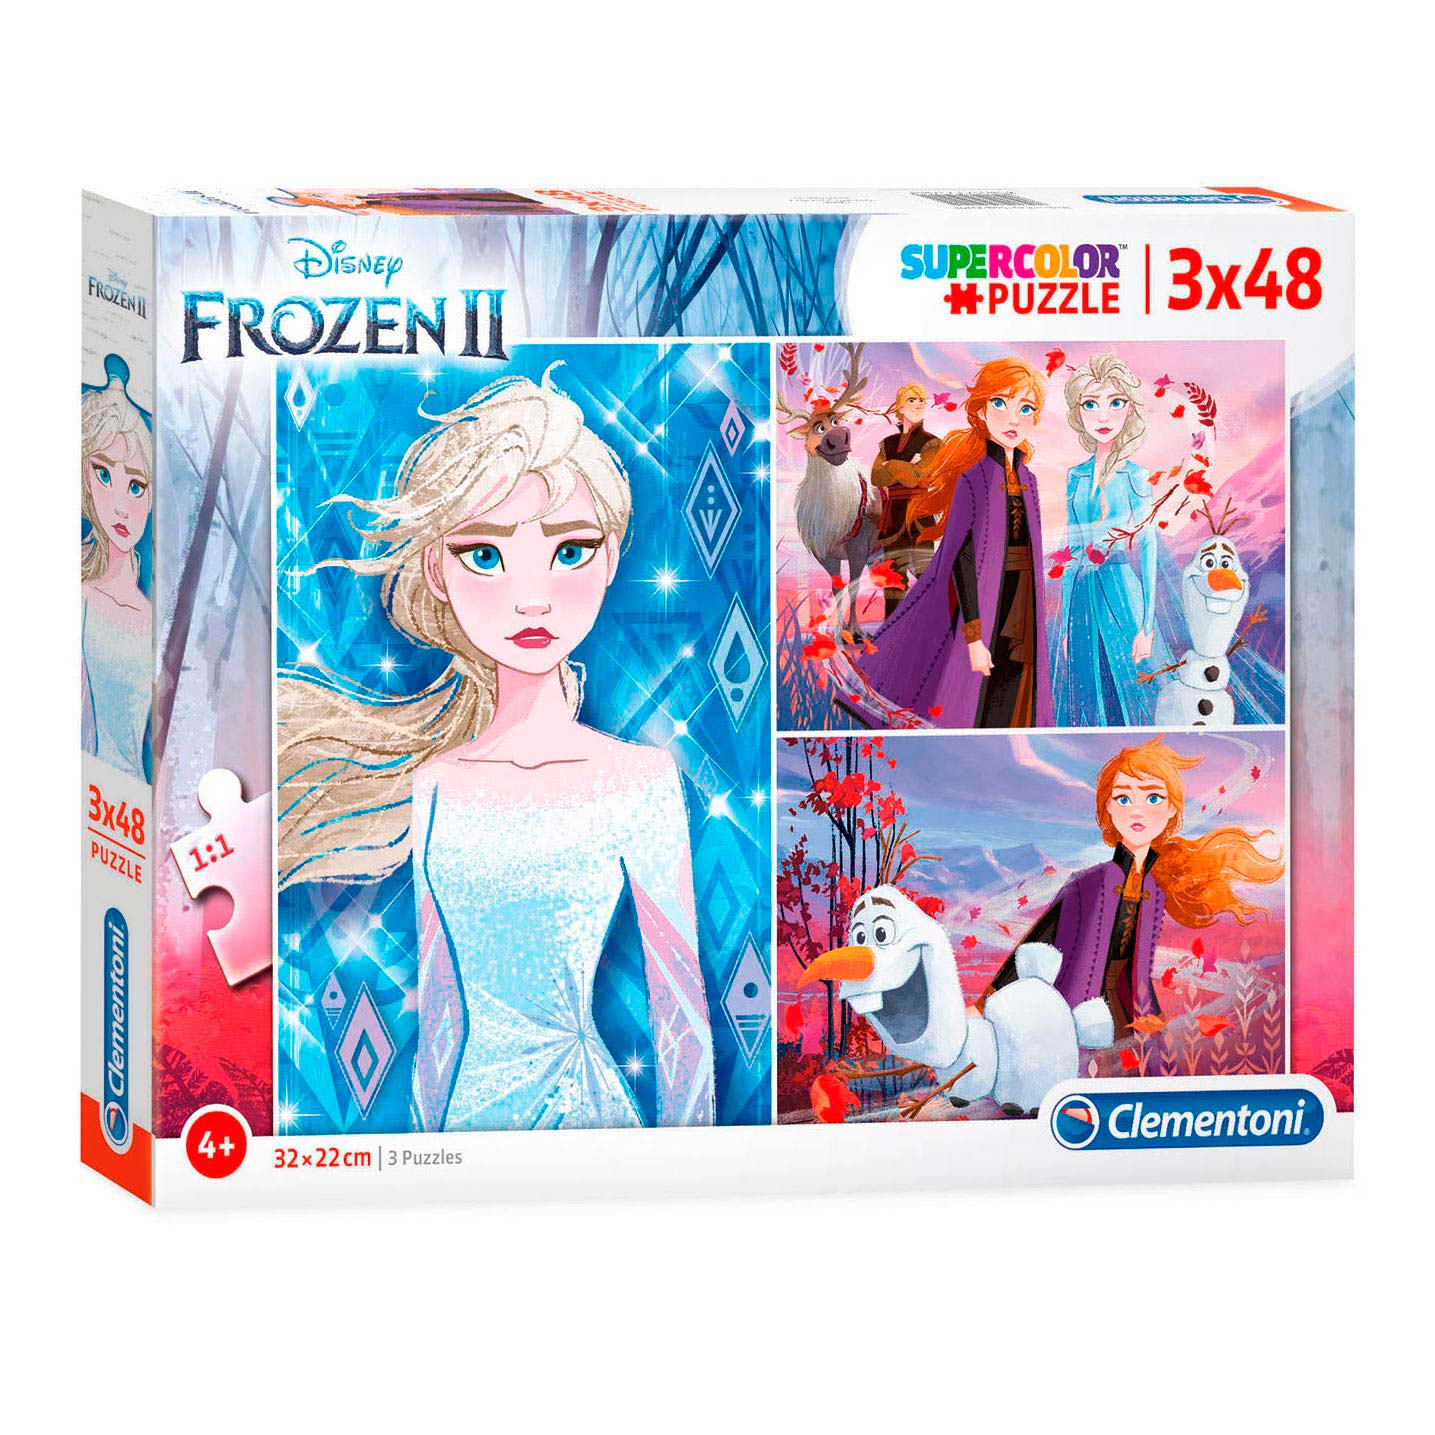 Clementoni Puzzle Disney Frozen 2, 3x48st.